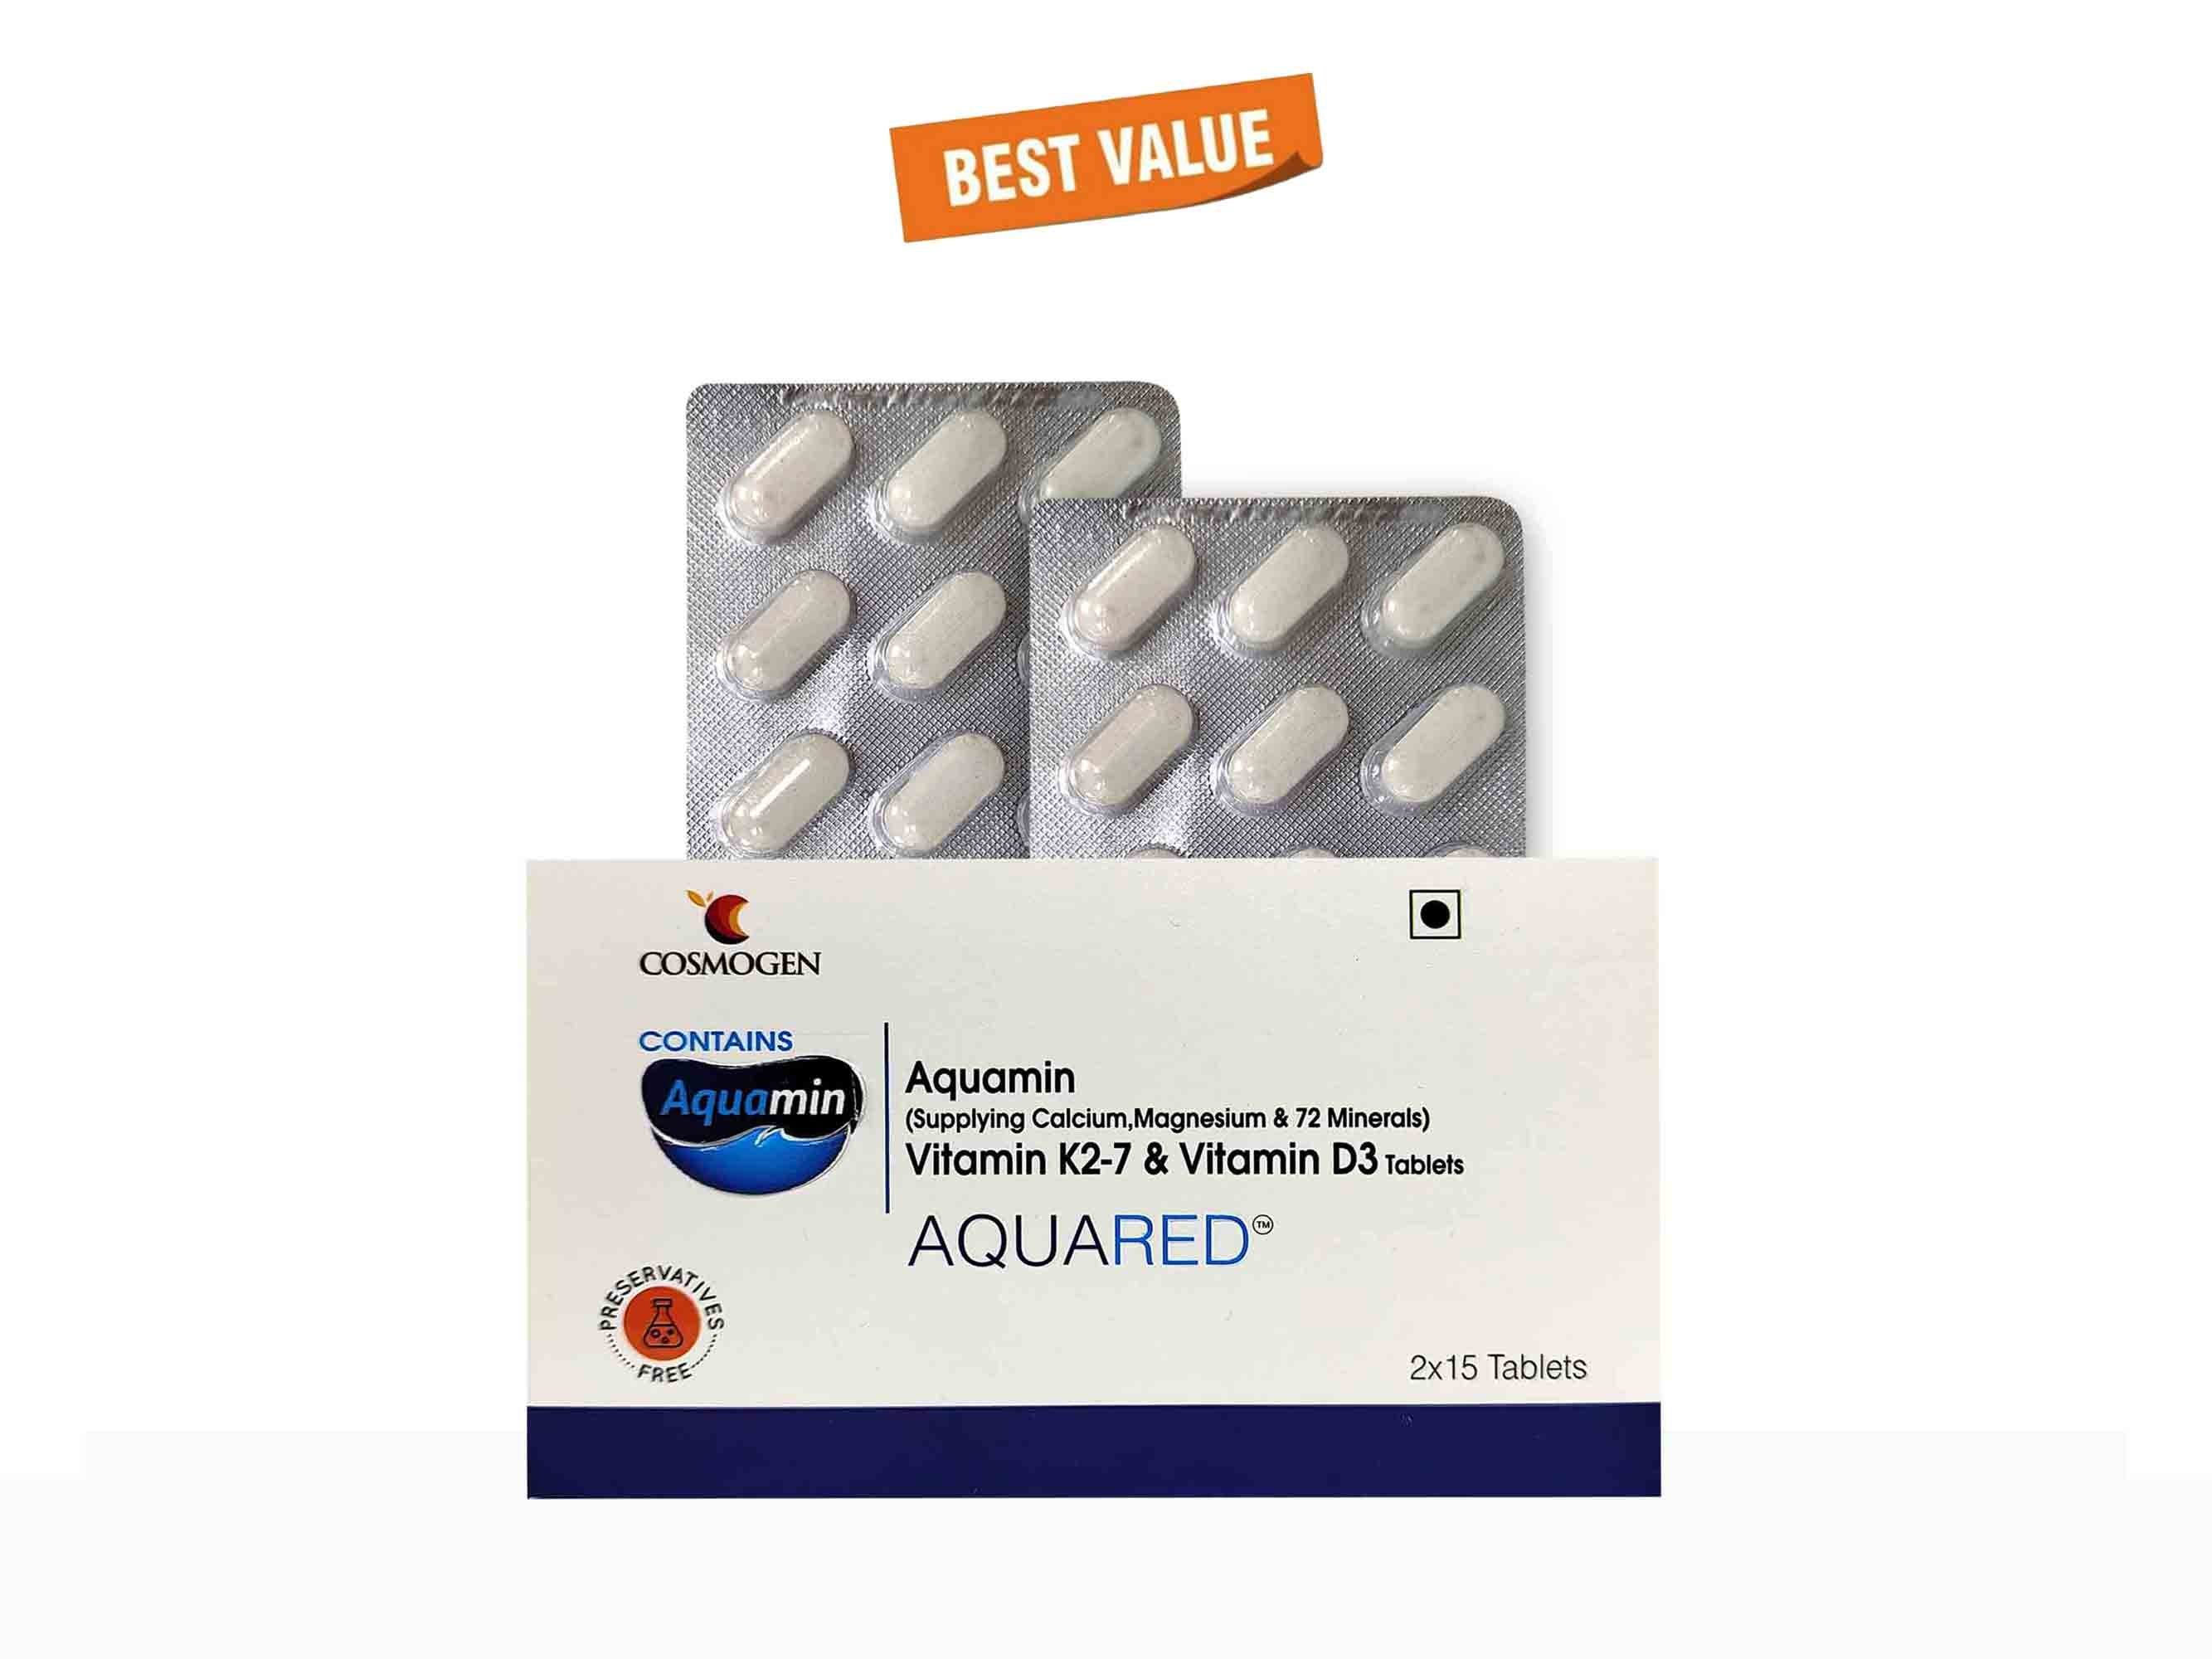 Aquared Aquamin, Vitamin K2-7 & Vitamin D3 Tablet